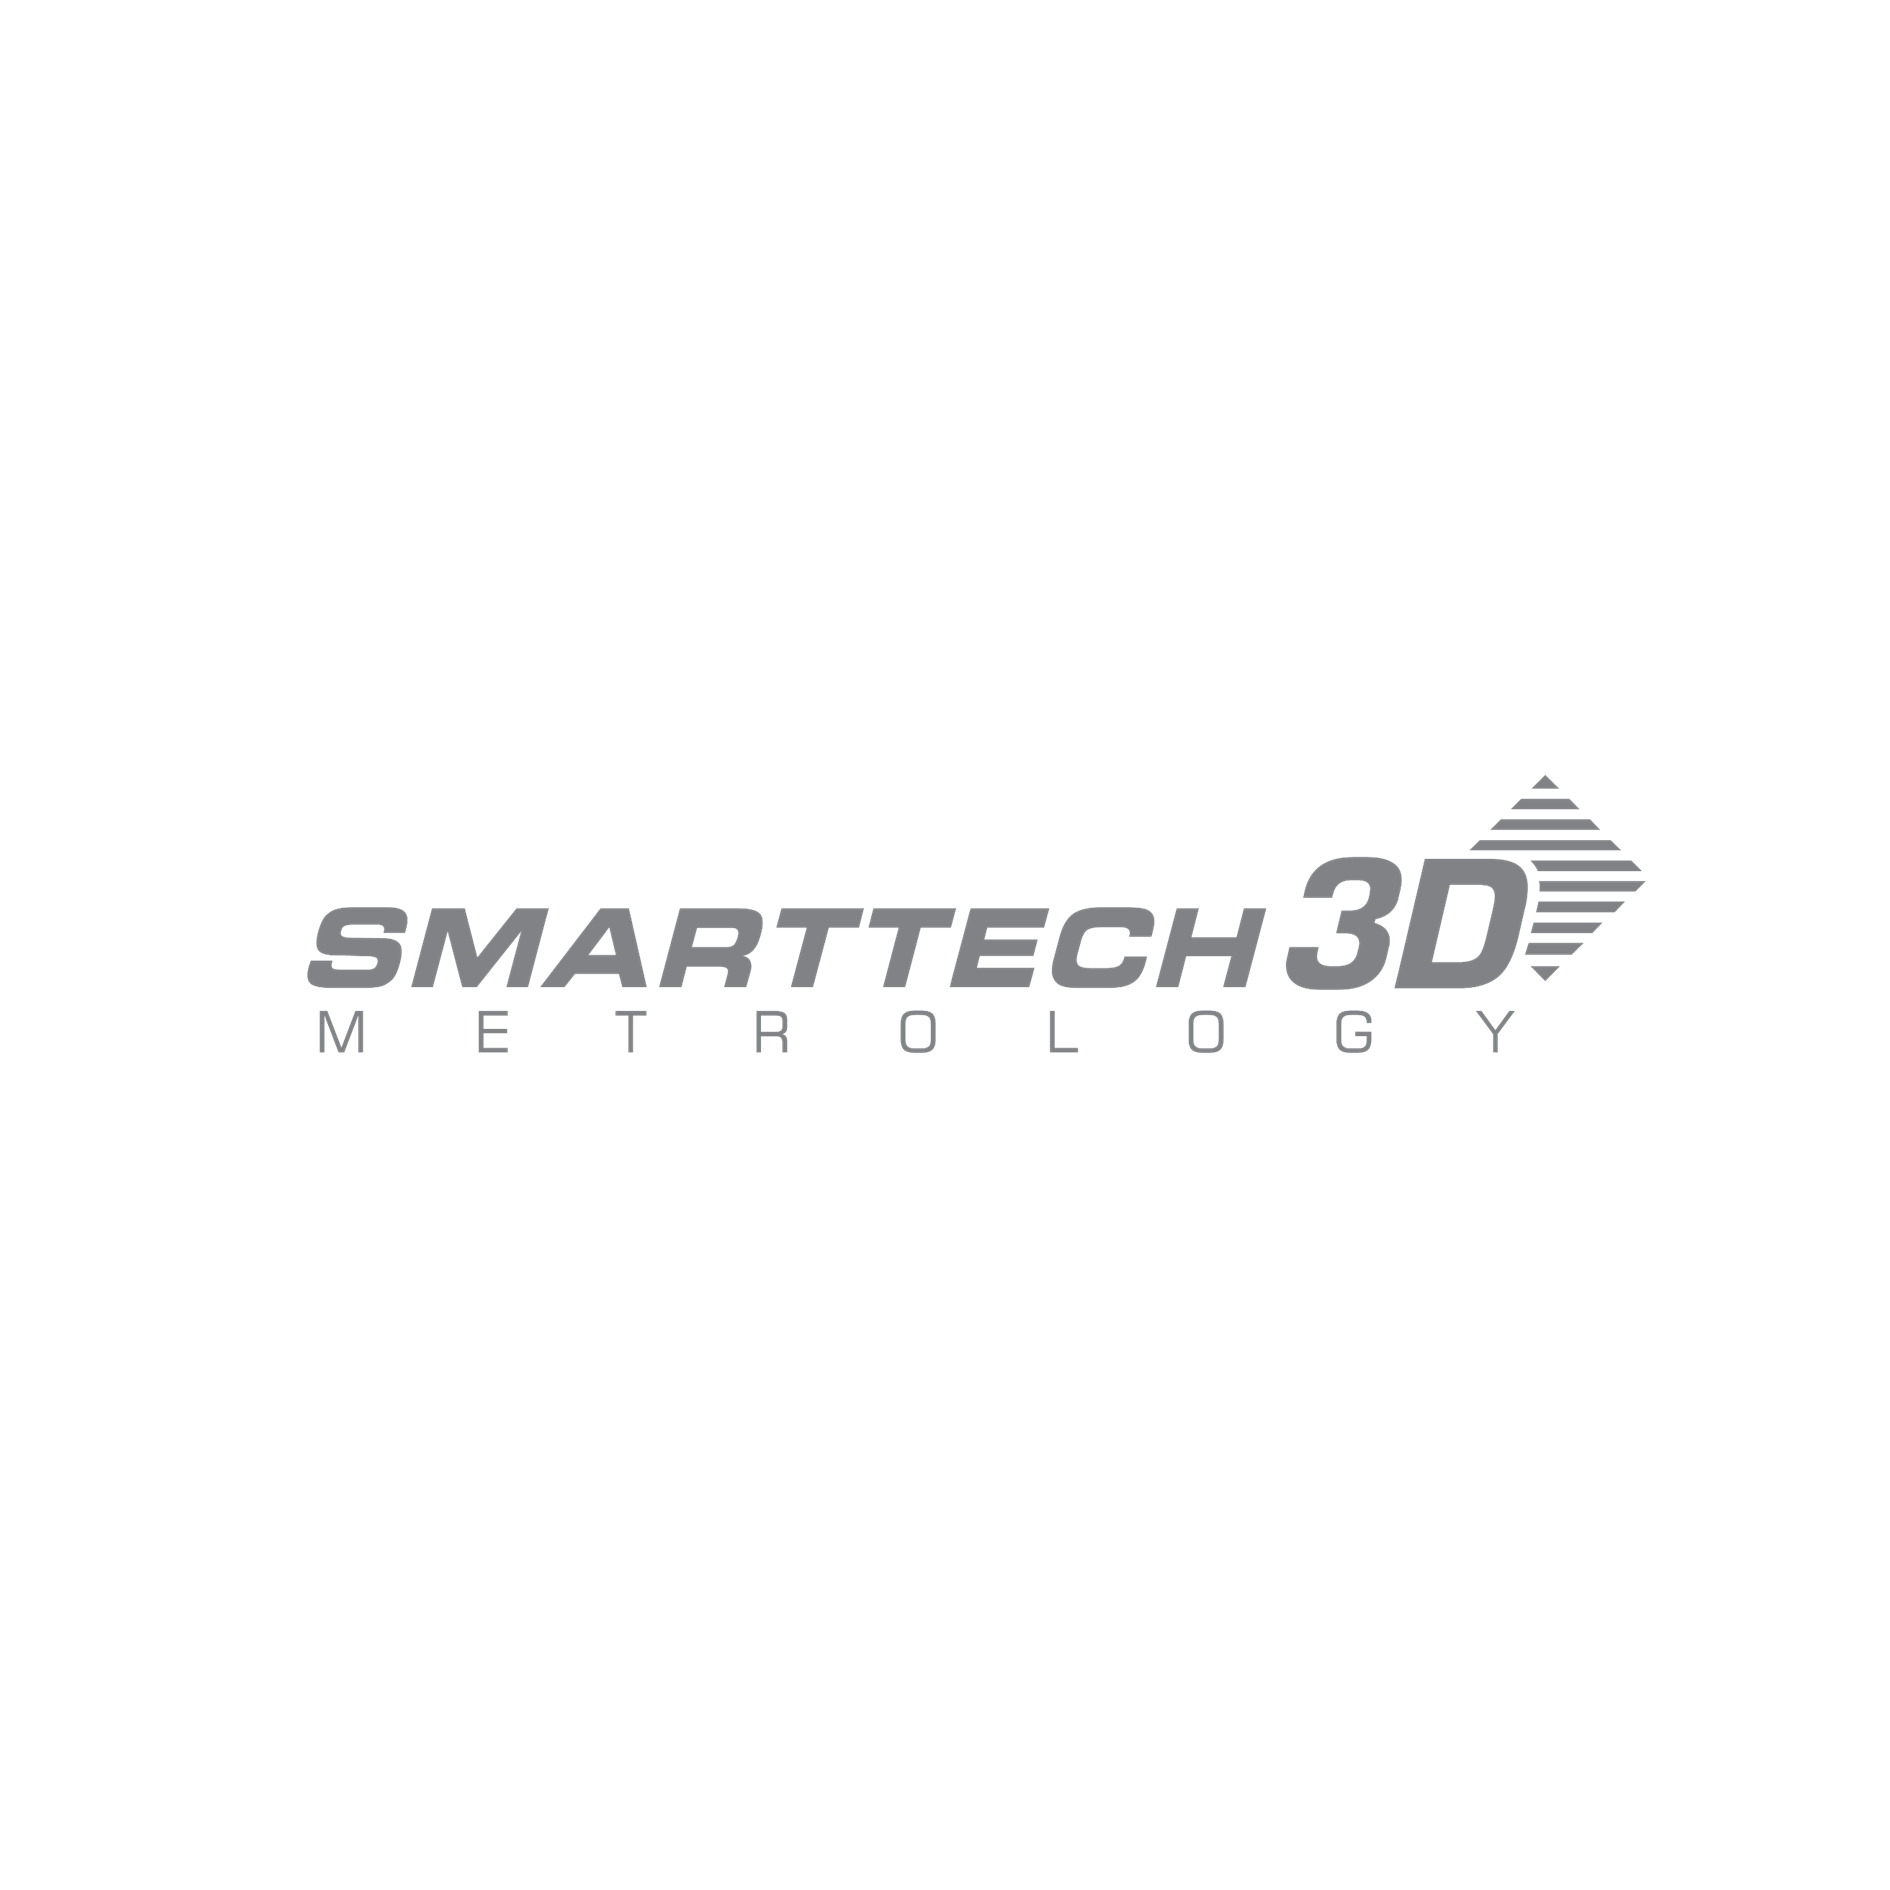 SMARTTECH czołowy w świecie polski producent skanerów 3D – profesjonalnych optycznych współrzędnościowych maszyn pomiarowych dostosowanych do różnych branż